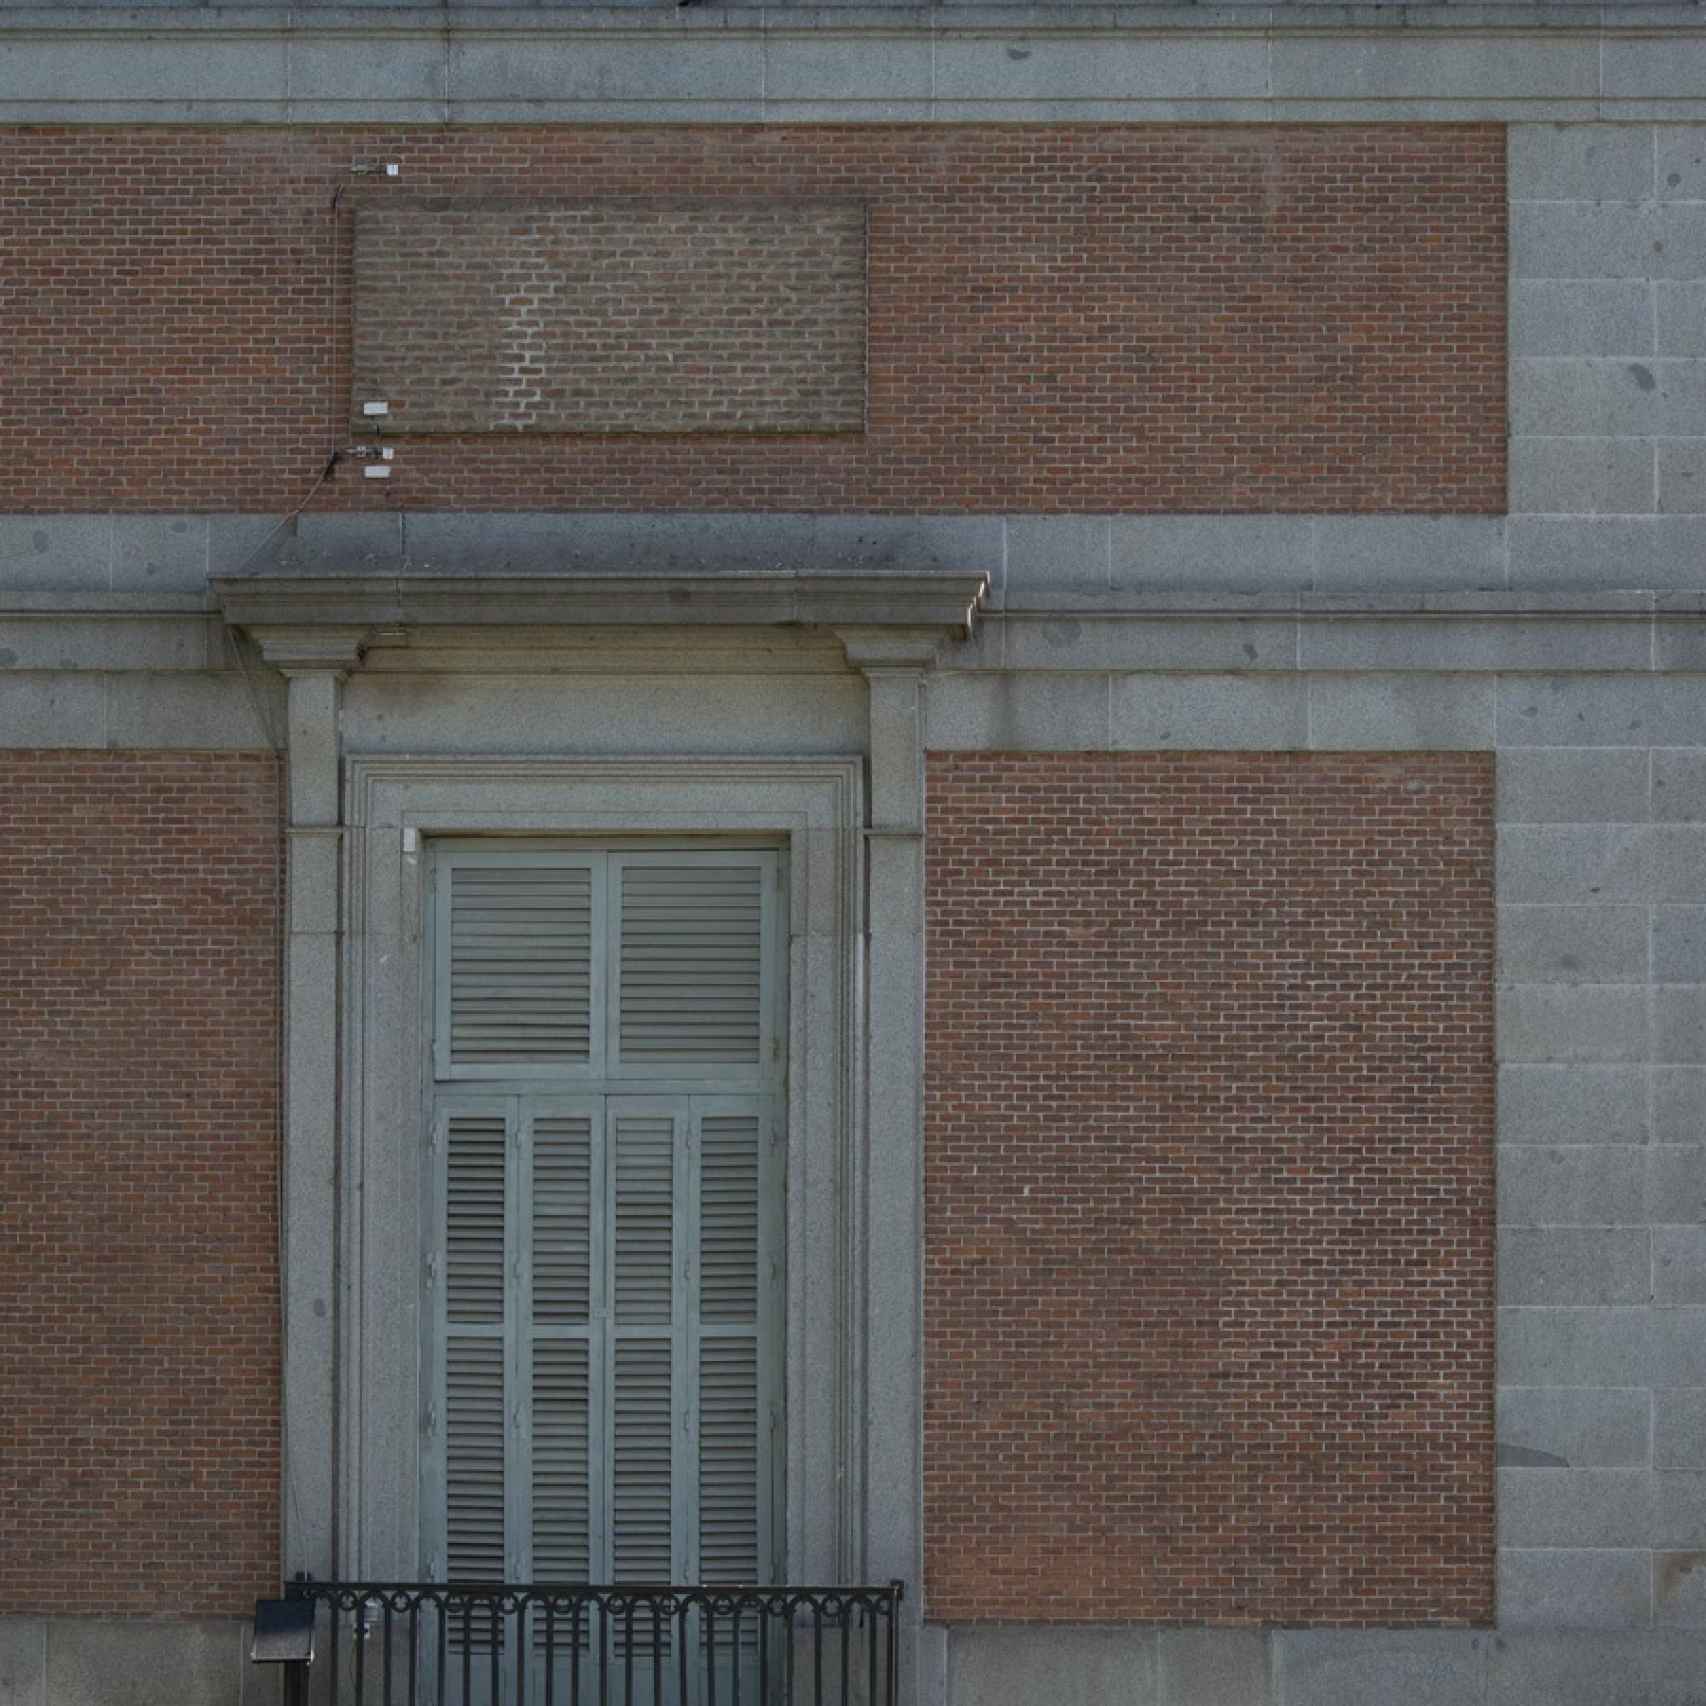 La grieta aparecida en 2014 escala toda la fachada del edificio Villanueva.